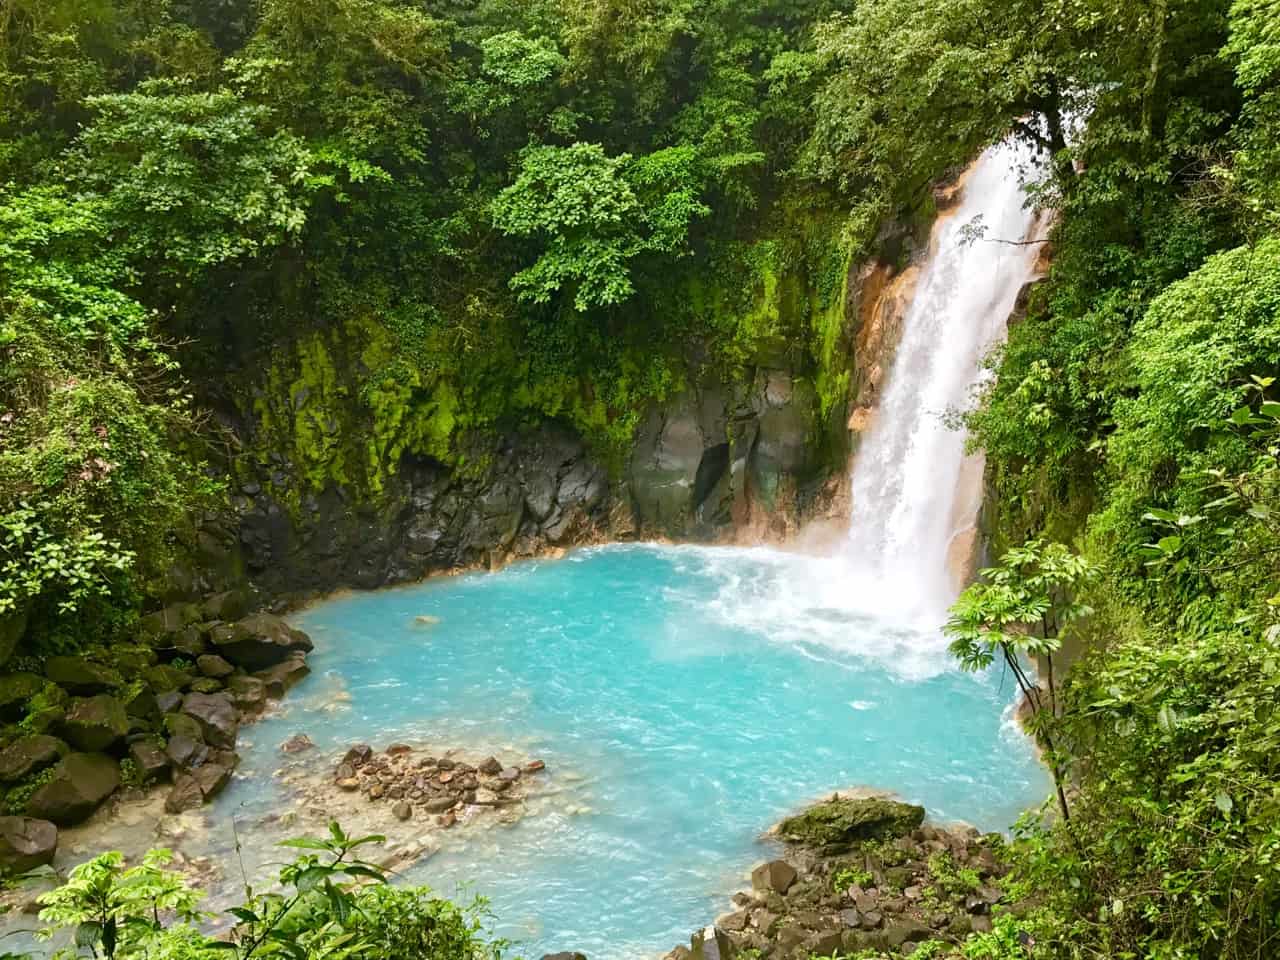  Wodospad Rio Celeste zanurza się w mleczno-niebieskim basenie w Parku Narodowym Tenorio Volcano, jednym z rzadziej odwiedzanych parków w Kostaryce.